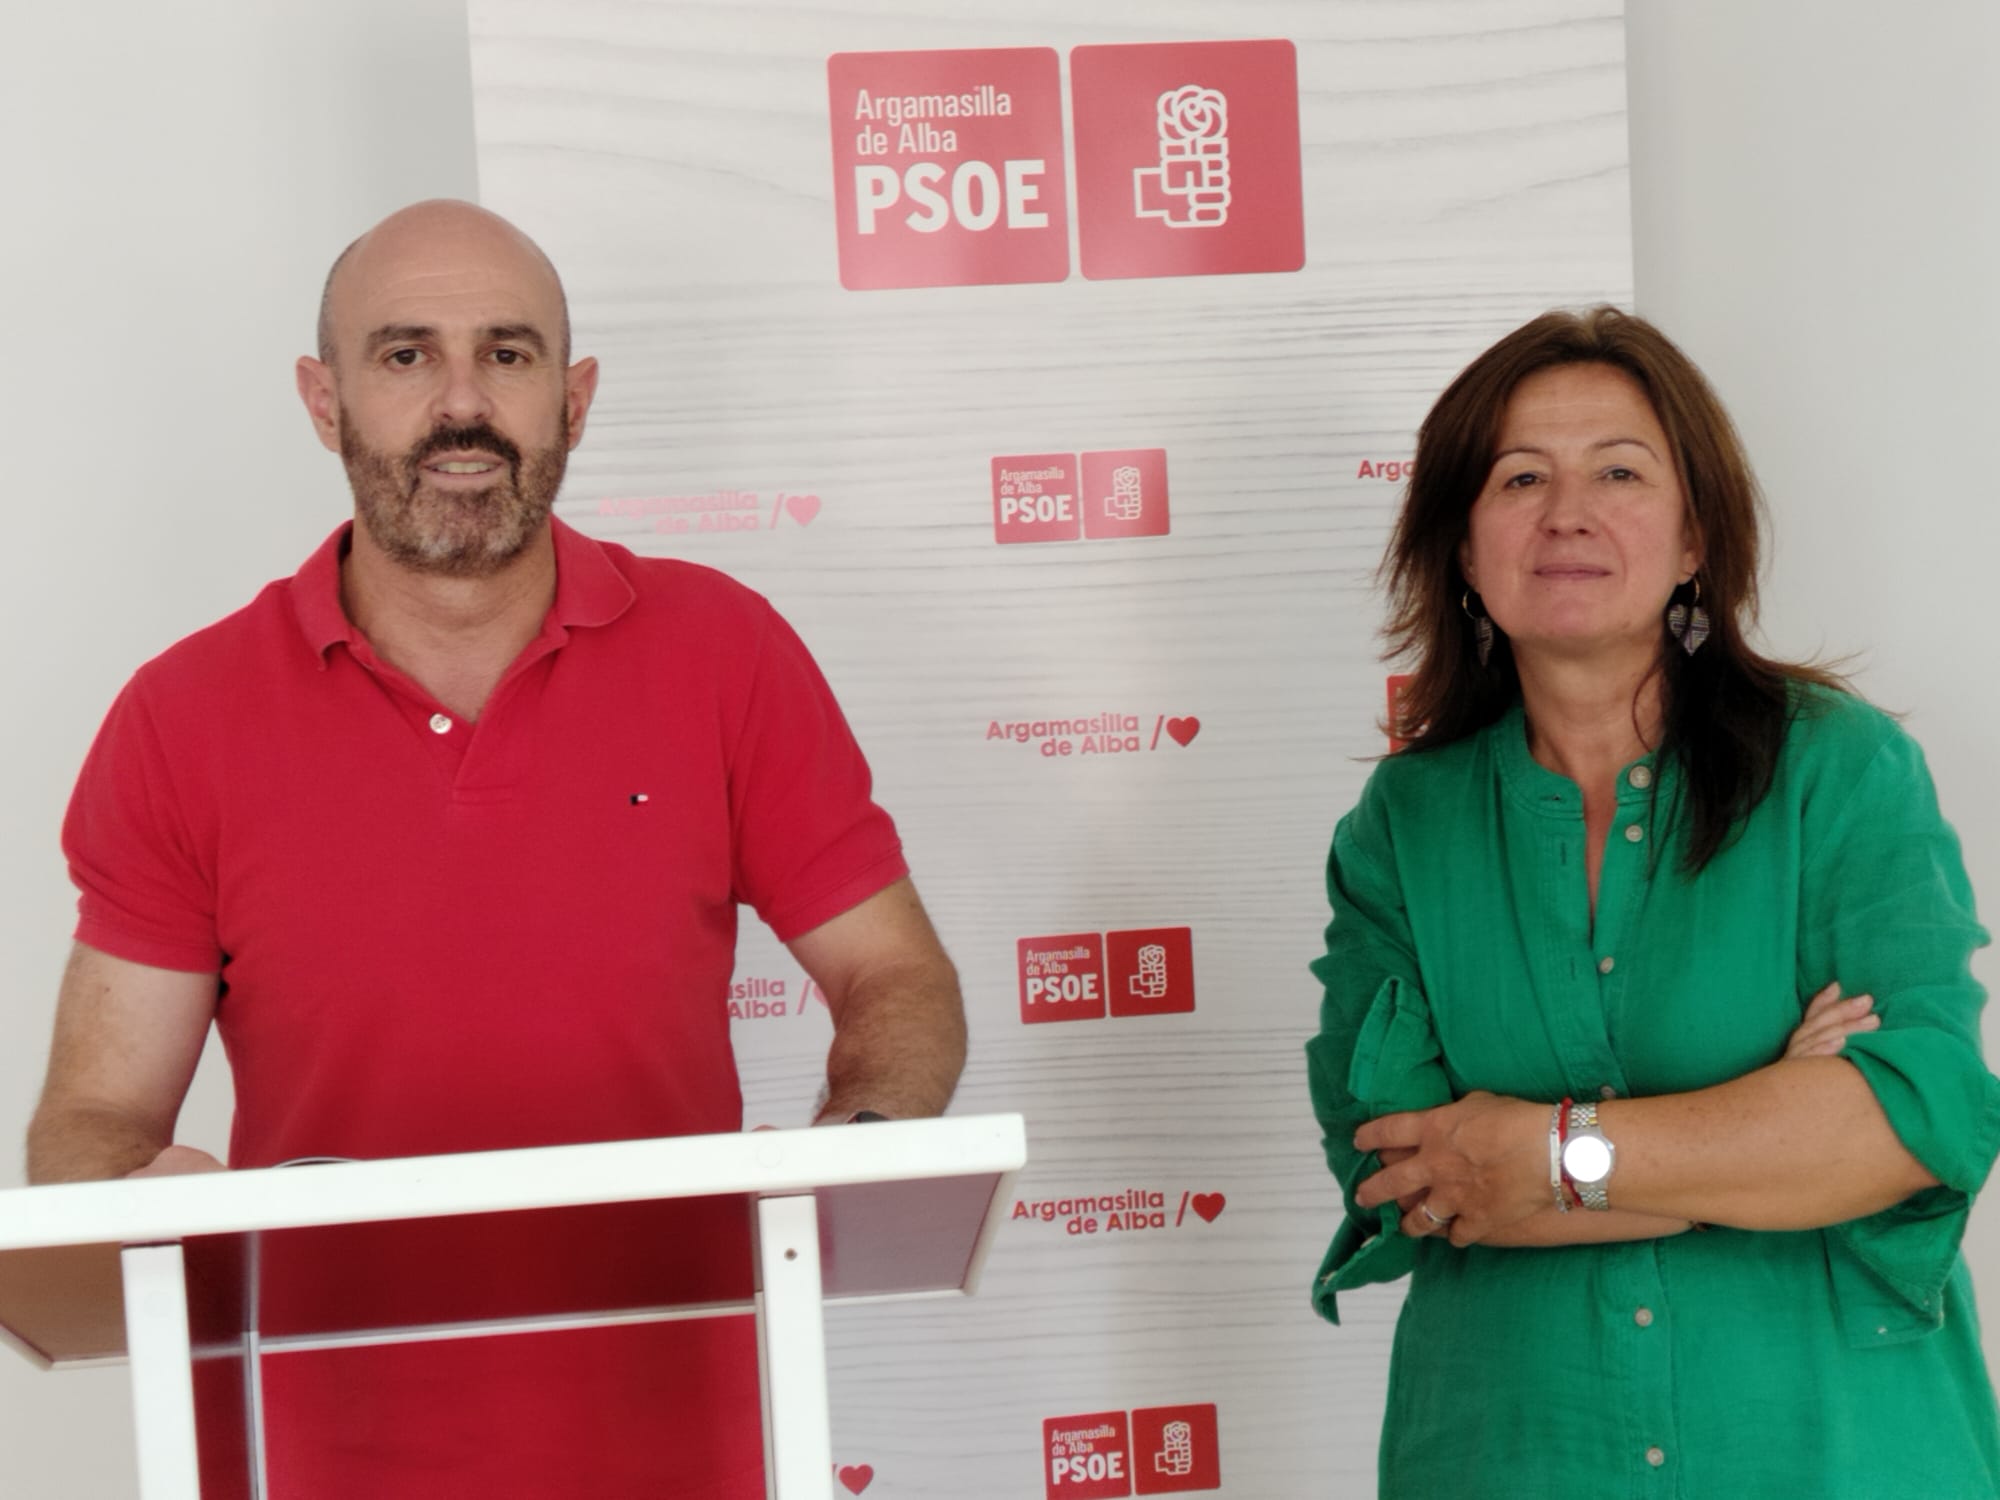 PSOE de Argamasilla de Alba al equipo de Gobierno del PP: “trabaje y deje de desviar la atención sobre sus retribuciones y su 'fuga' a la Diputación”